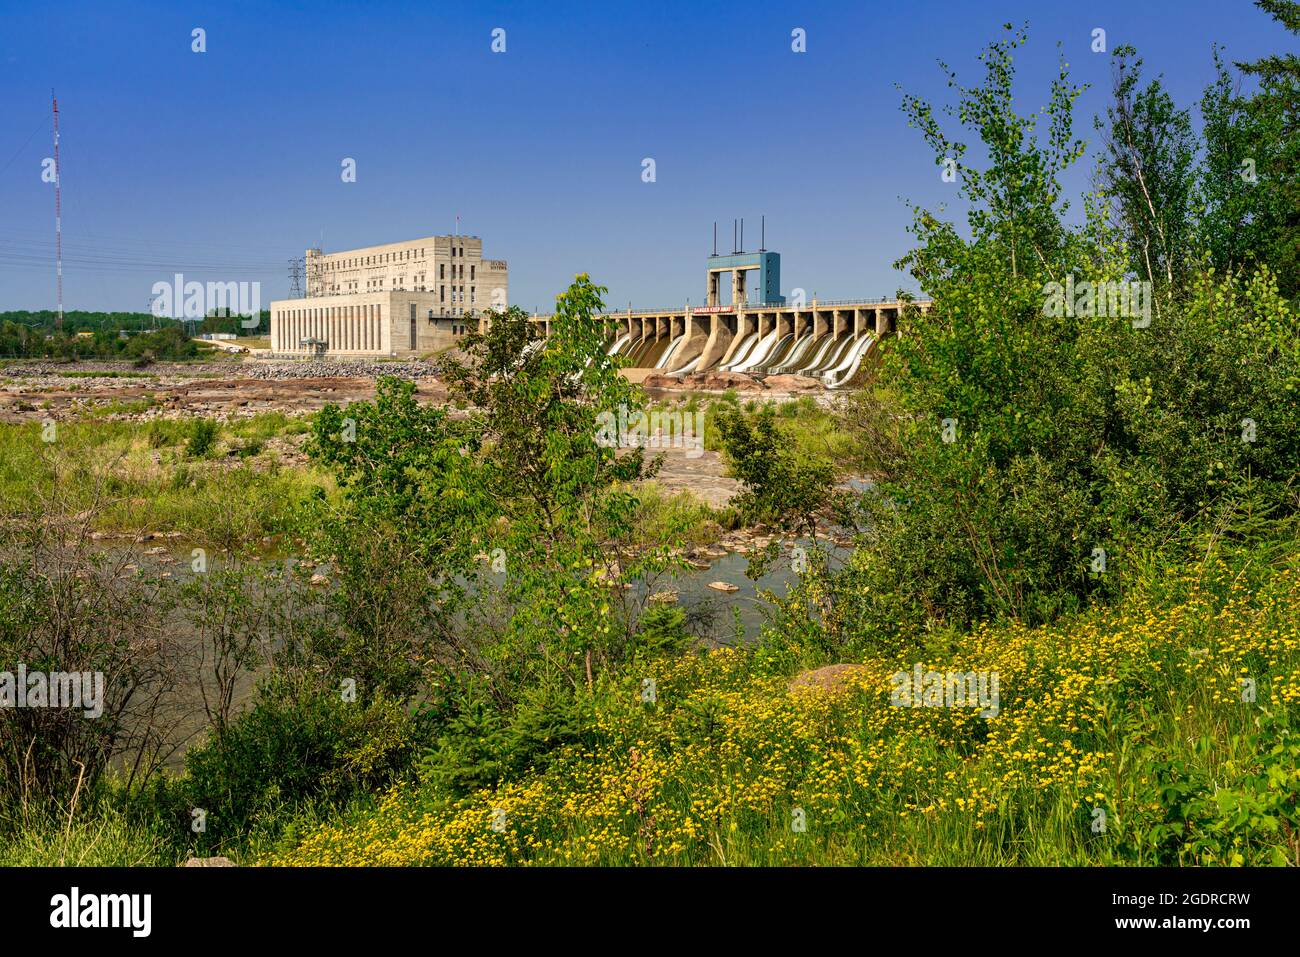 La centrale hydroélectrique de Manitoba Hydro à Seven Sisters, Manitoba, Canada. Banque D'Images